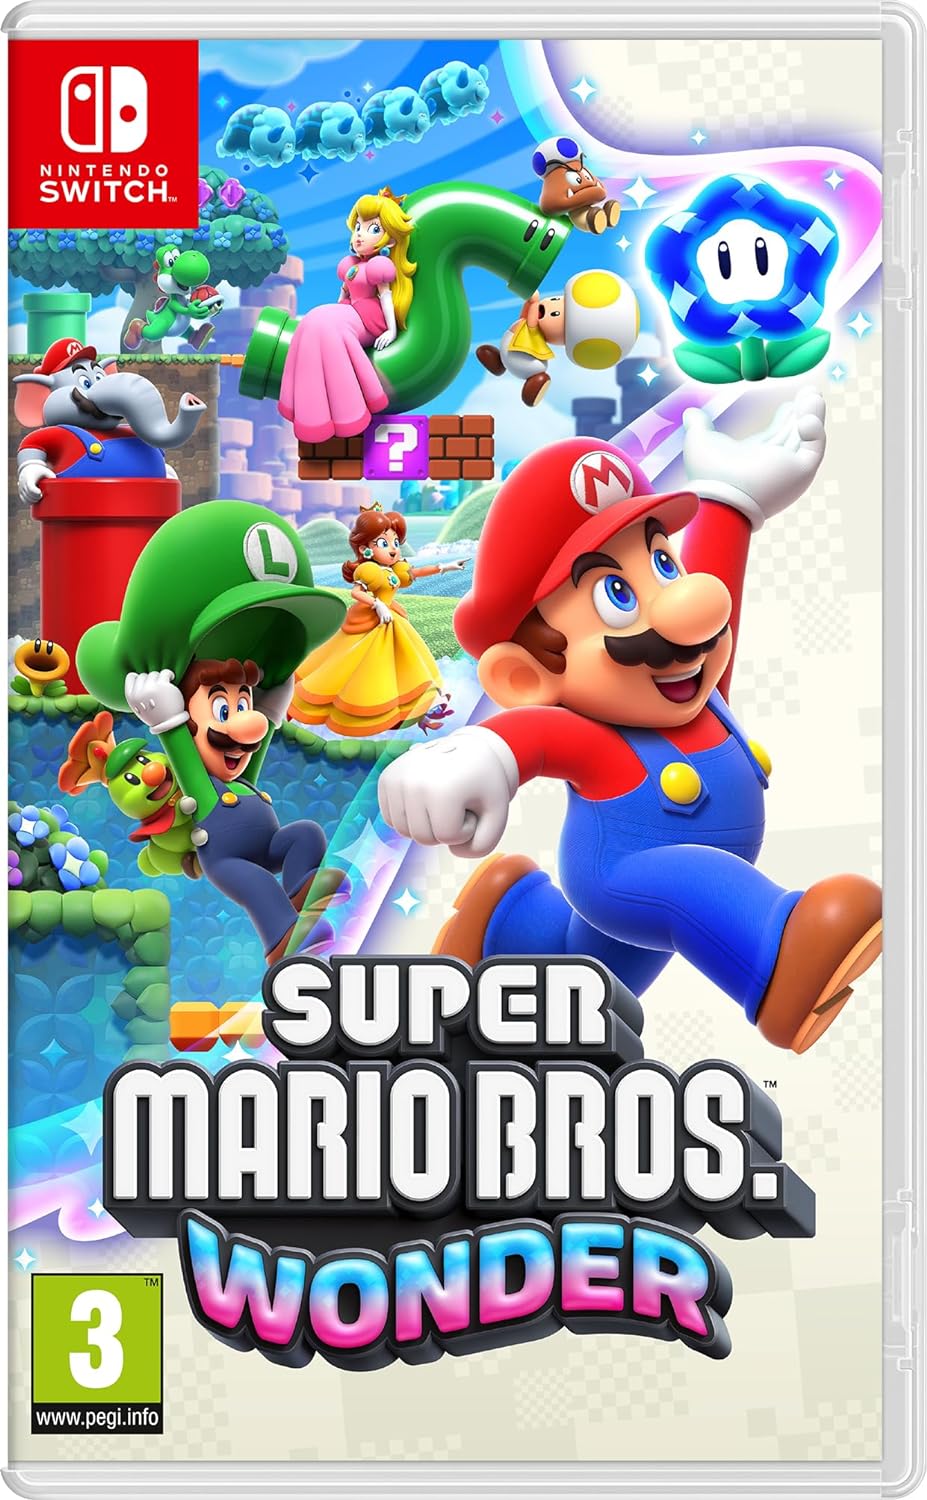 Super Mario Bros. Wonder - Switch [New] | Yard's Games Ltd